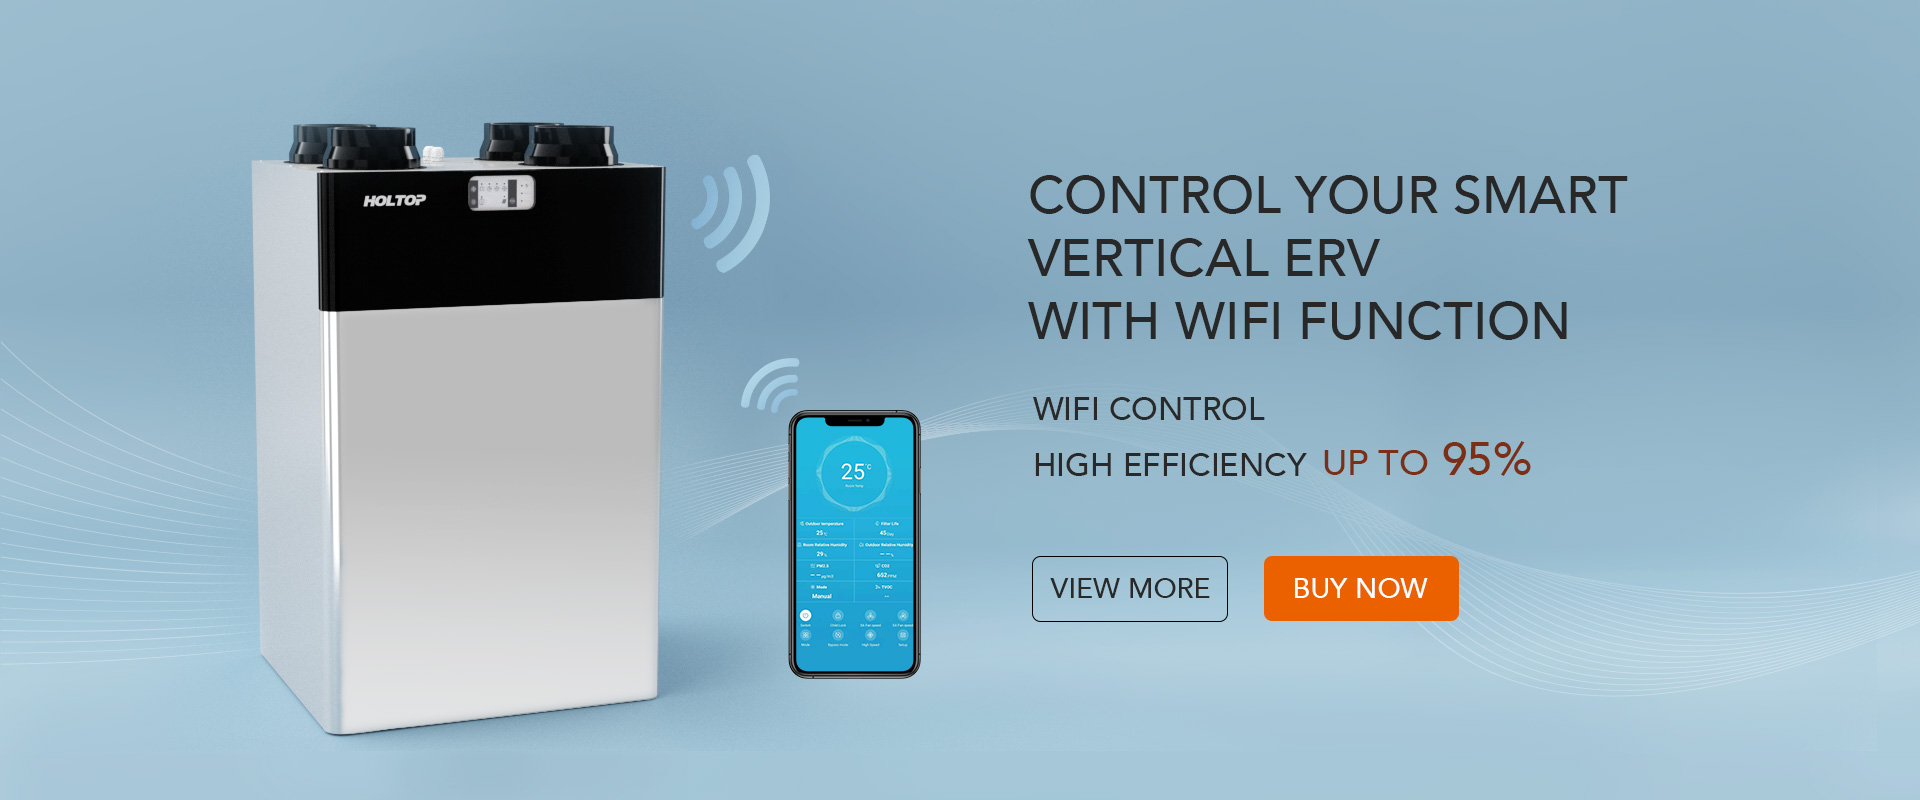 Holtop Smart HRV verticale aggiornato con funzione WiFi